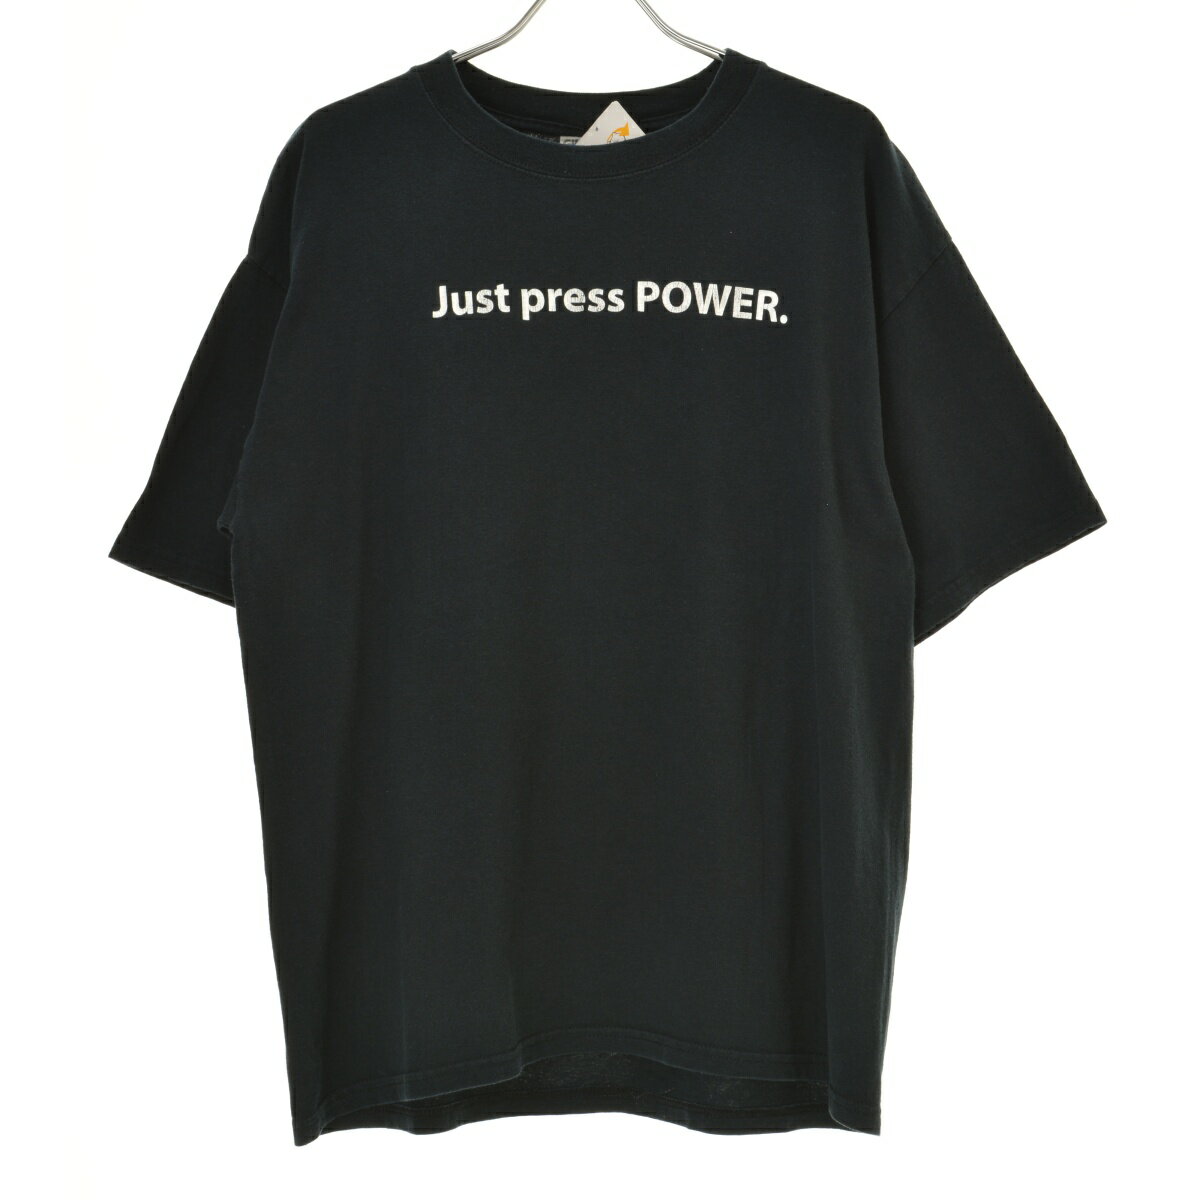 šۡڴָͲGILDAN00s JUST PRESS POWERȾµTġcacdahbi-m